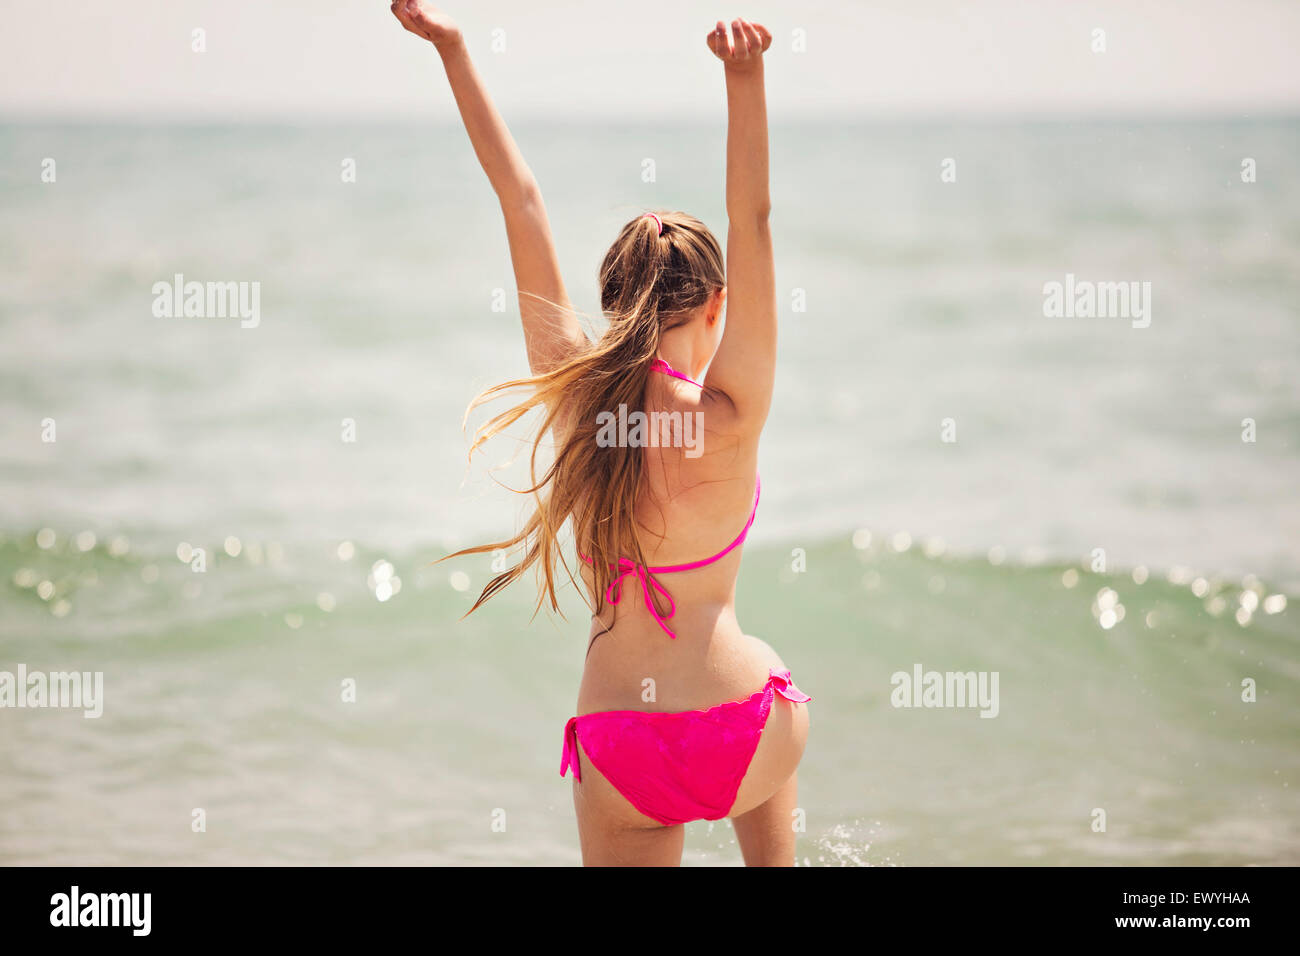 Adolescente saltar en el aire en la playa Foto de stock